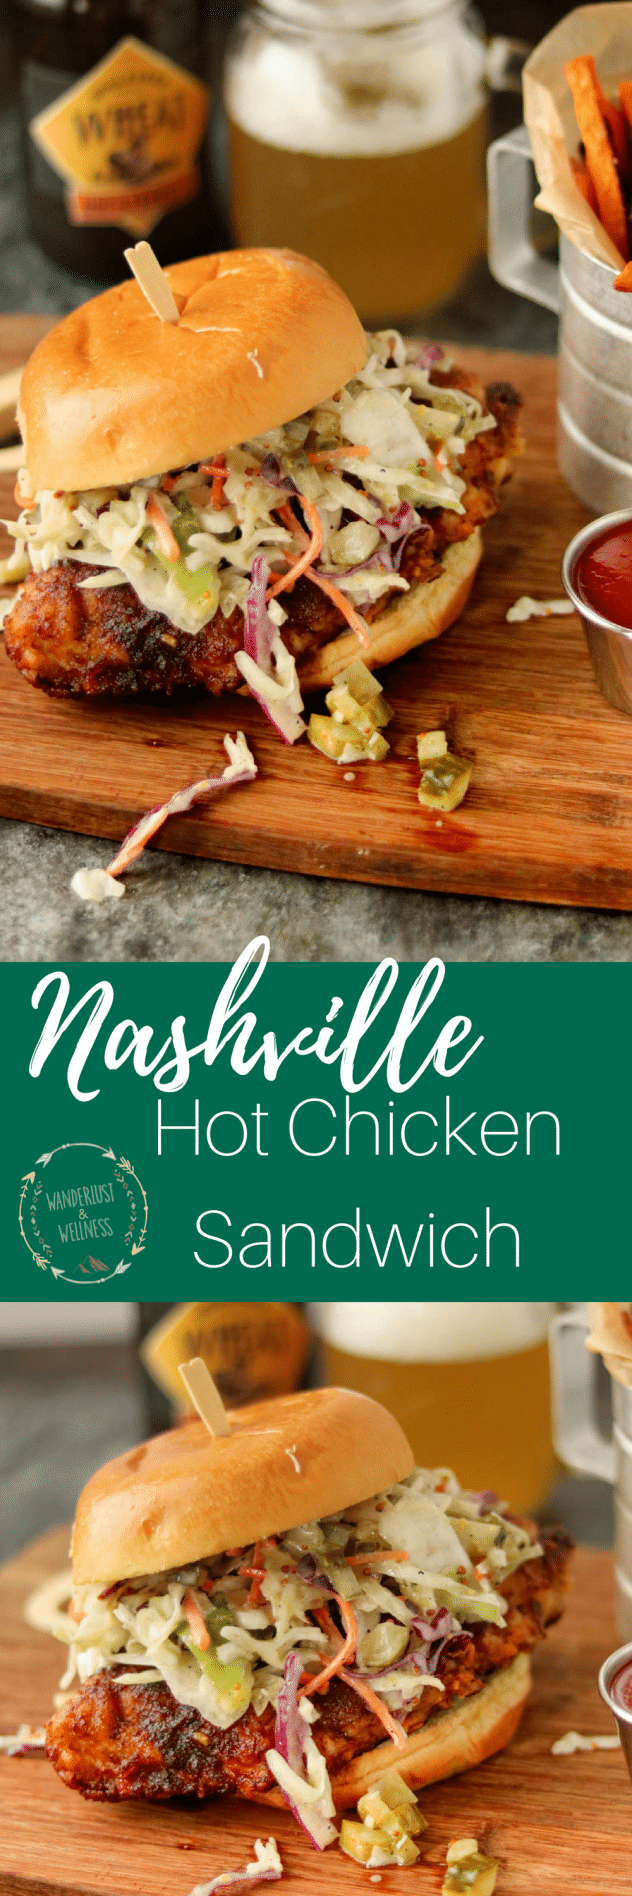 Nashville Chicken Sandwich Yard House / Review: Nashville Hot Chicken